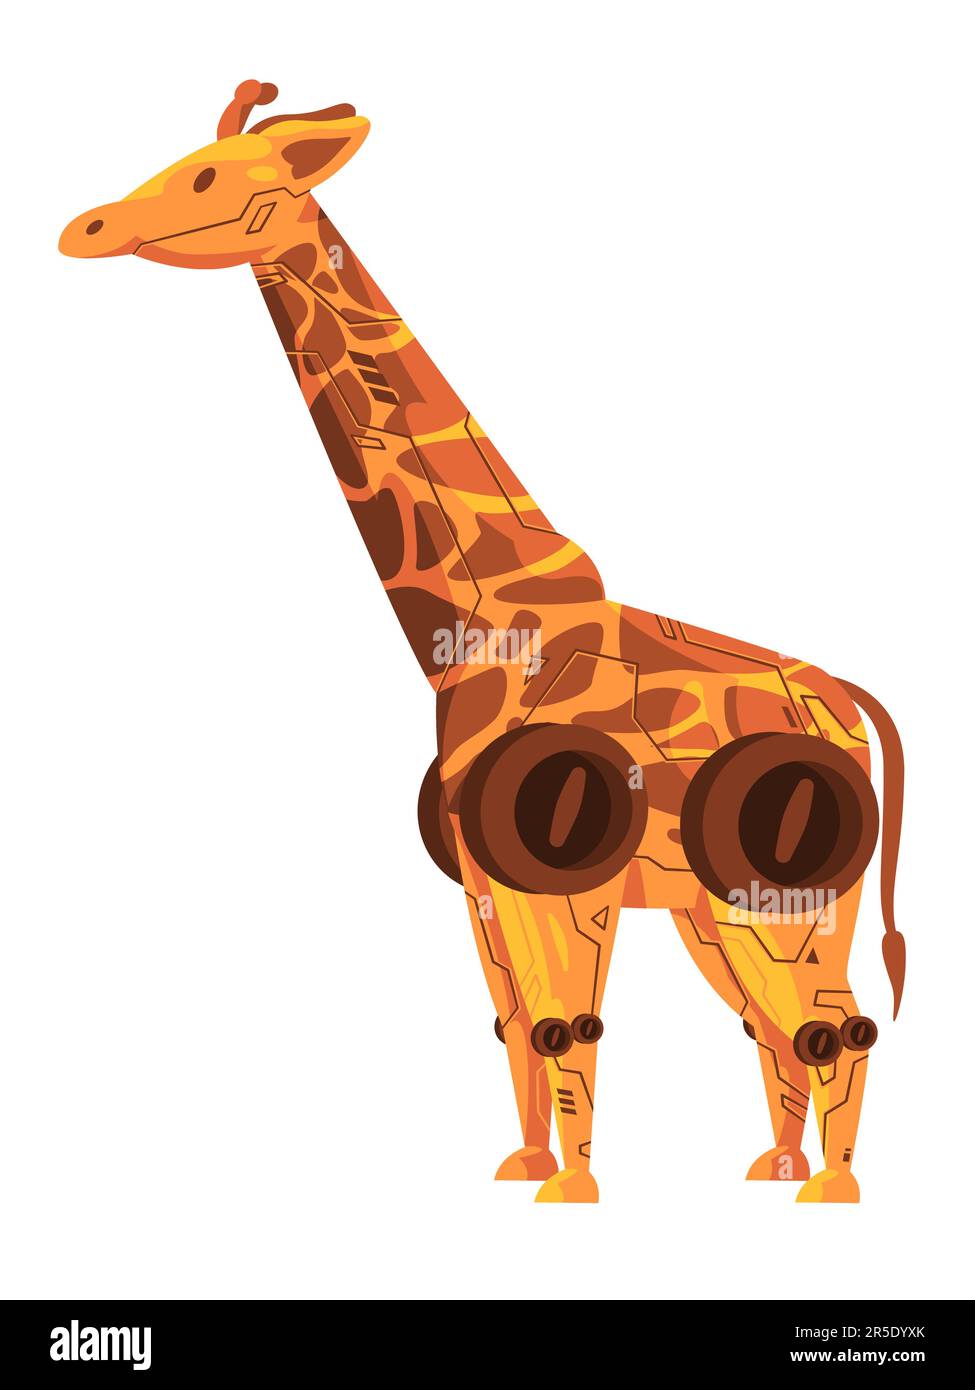 Giraffe robot animale robot robot creatura robot macchina giocattolo futuristico cyborg illustrazione grafica Illustrazione Vettoriale